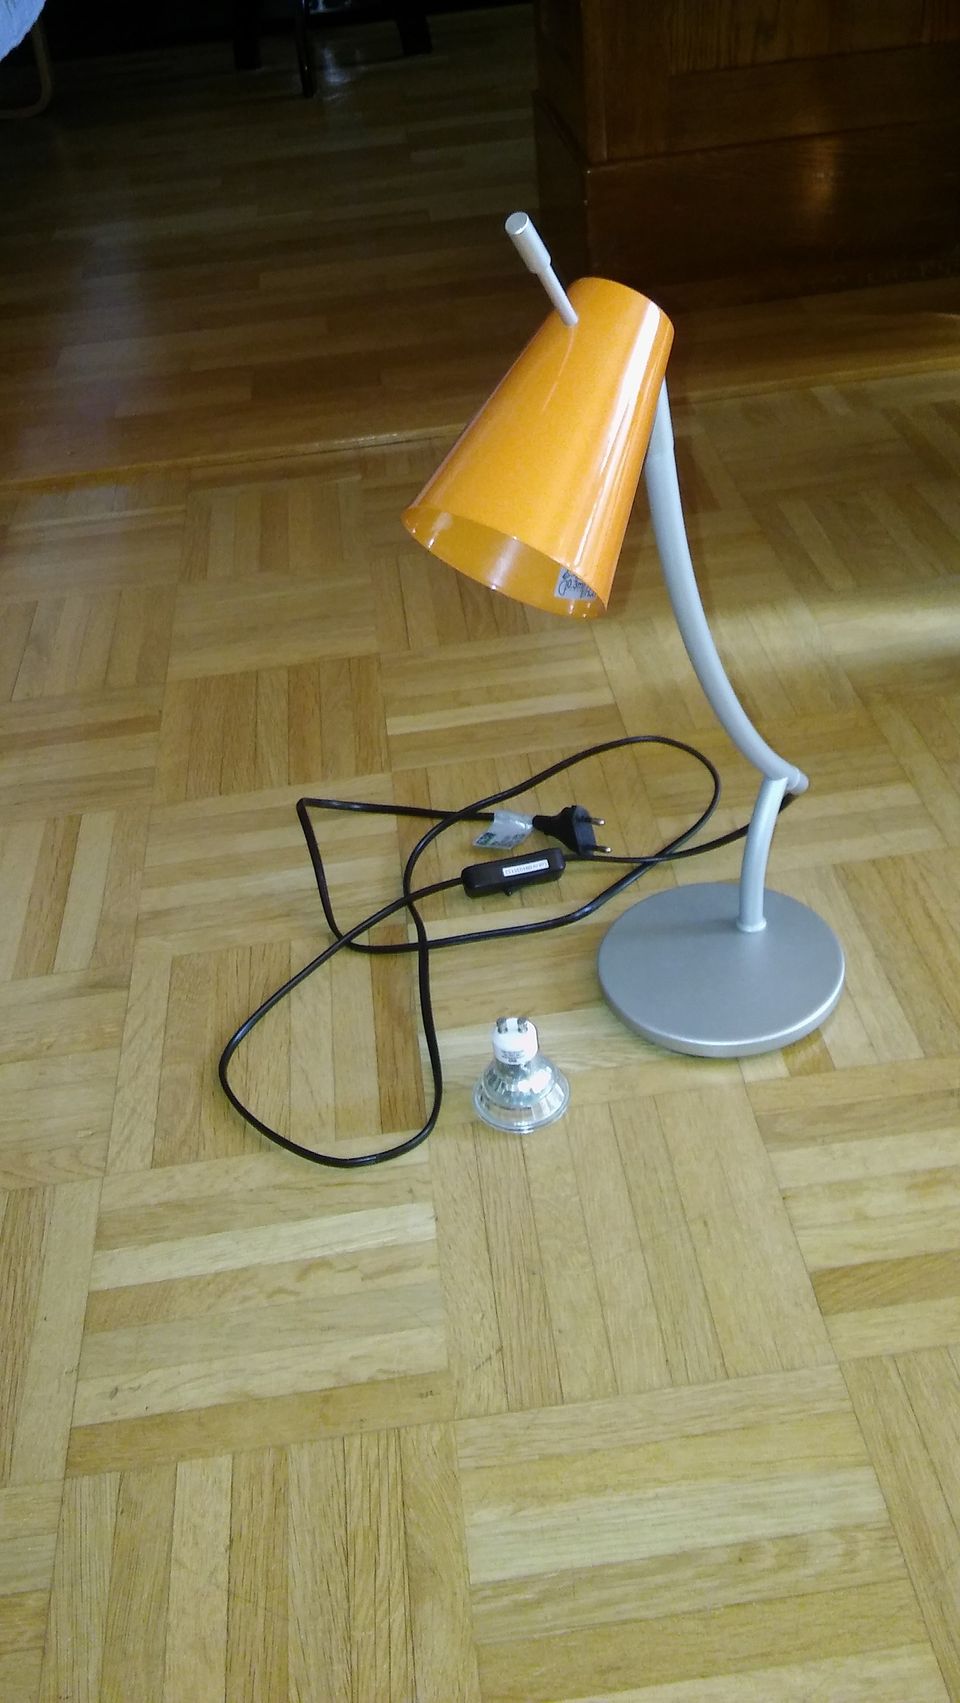 Kohdevalaisin, pöytälamppu, Ikea